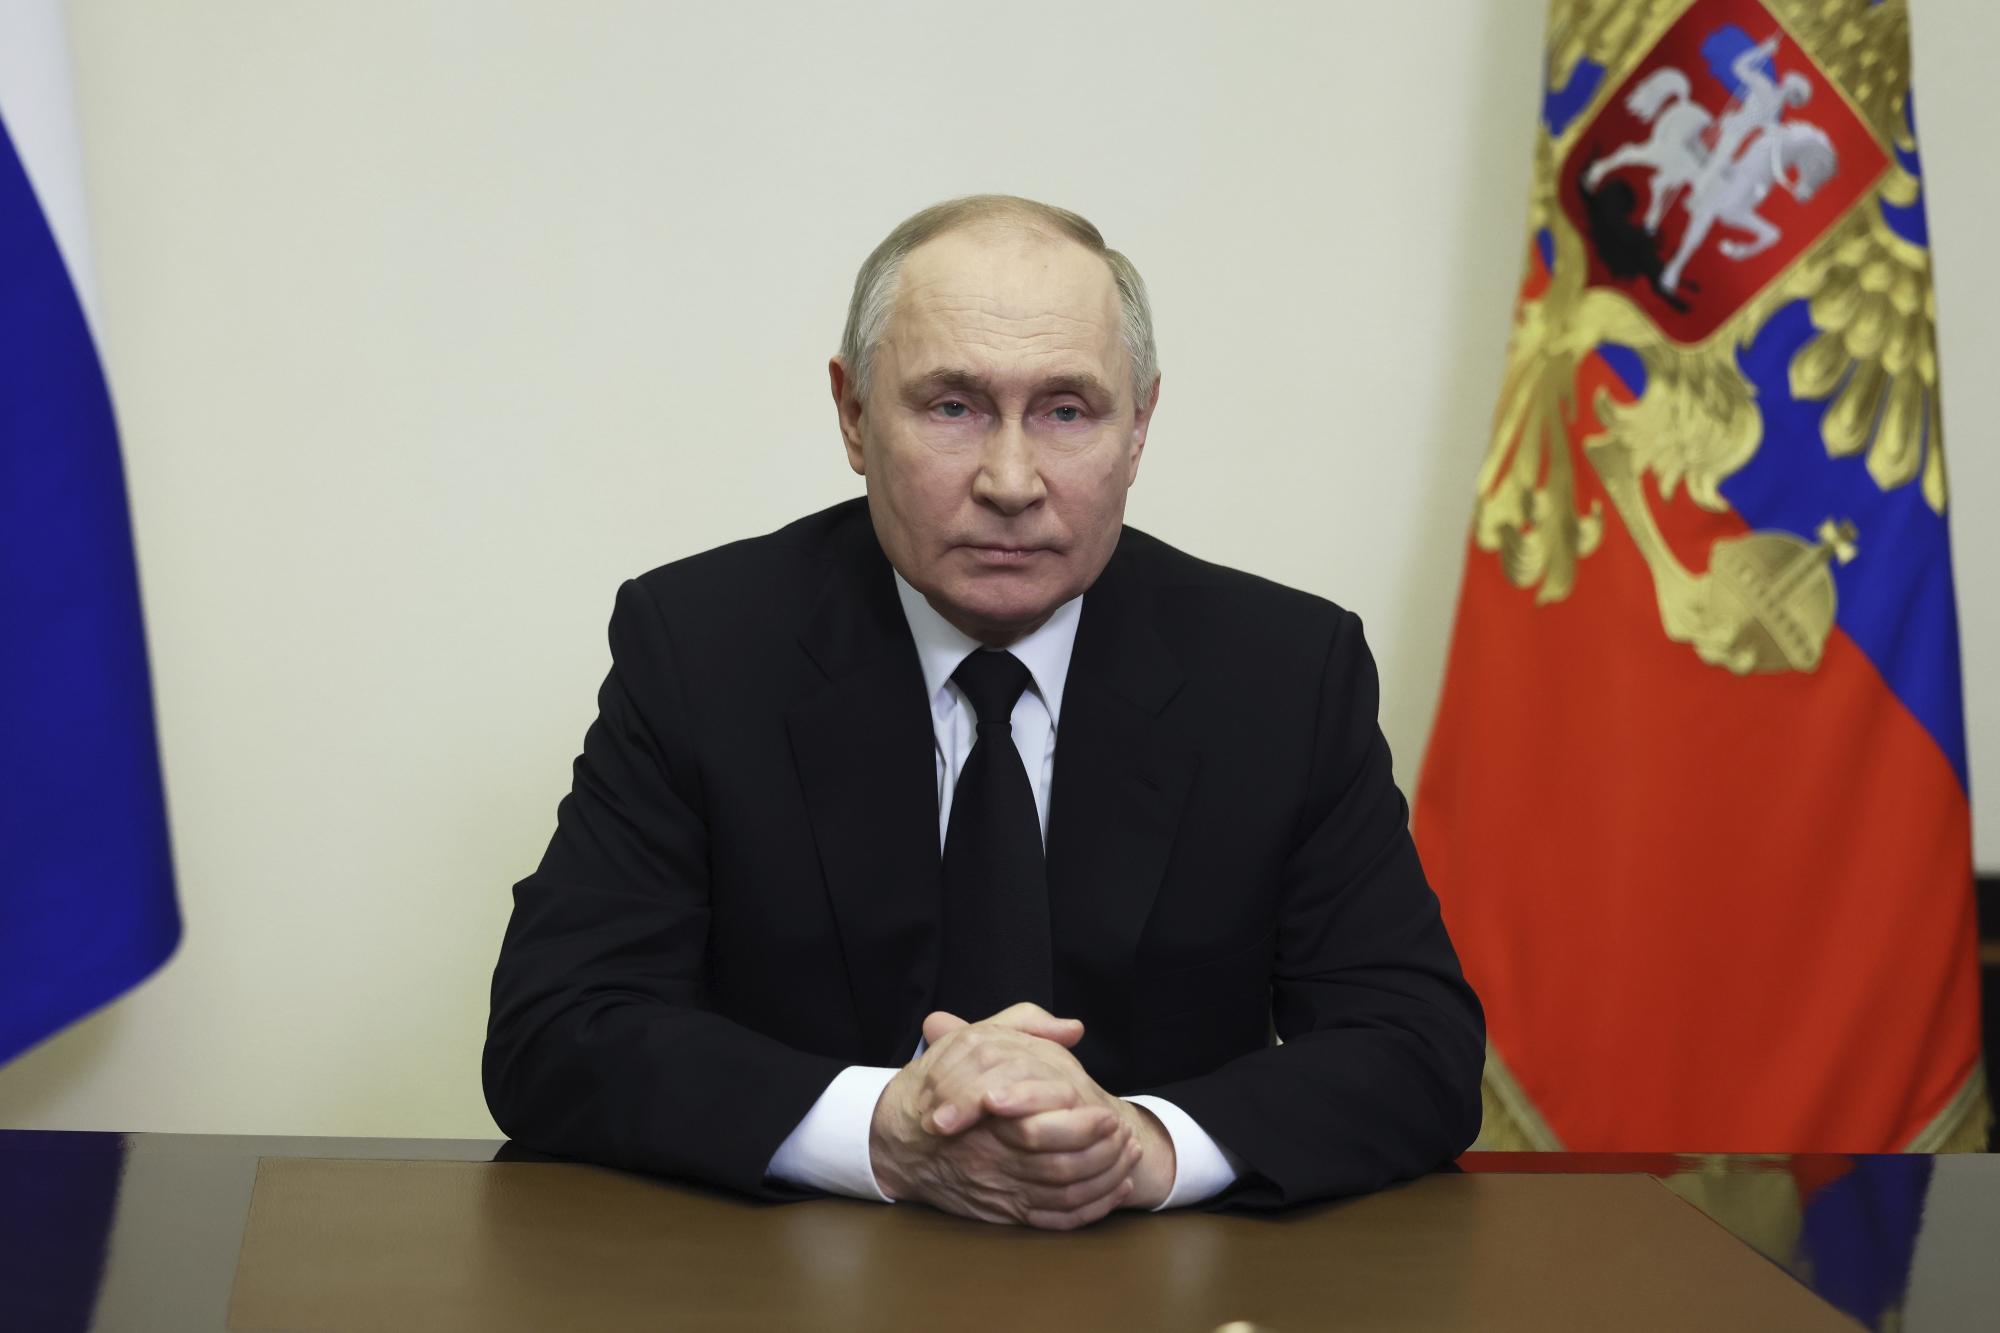 Putin busca responsabilizar a Ucrania de atentado en Moscú: Zelensky. Noticias en tiempo real